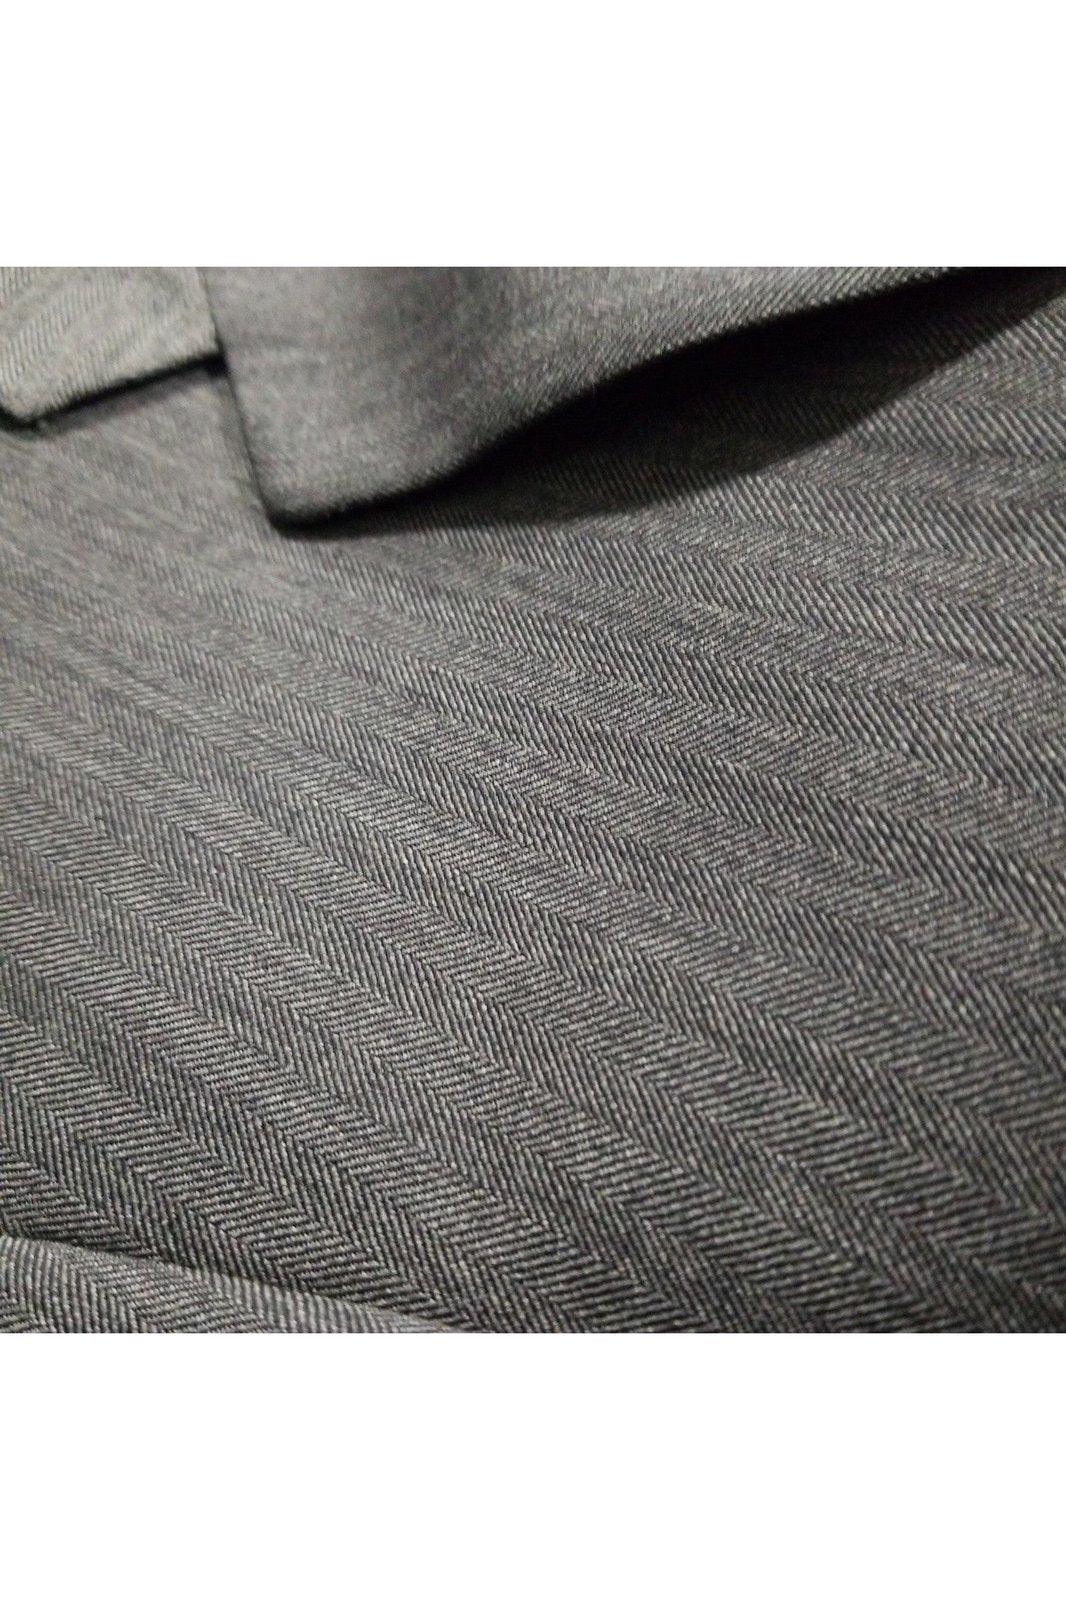 Jos. A Bank men's gray suit jacket size 43R